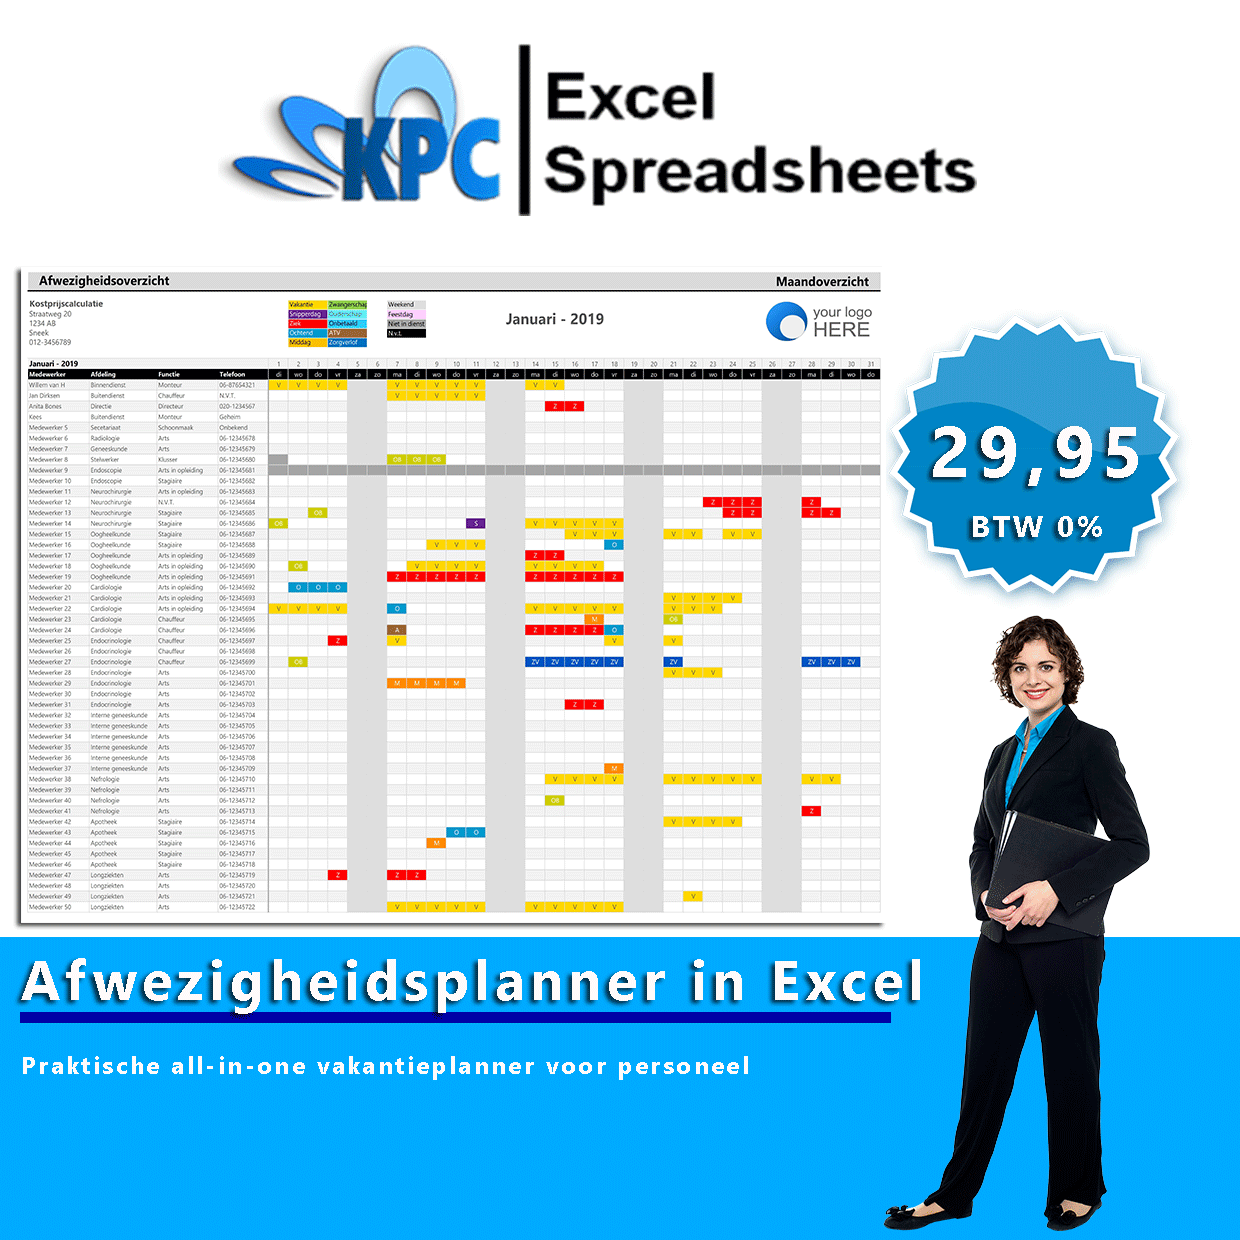 Afwezigheidsplanner in Excel